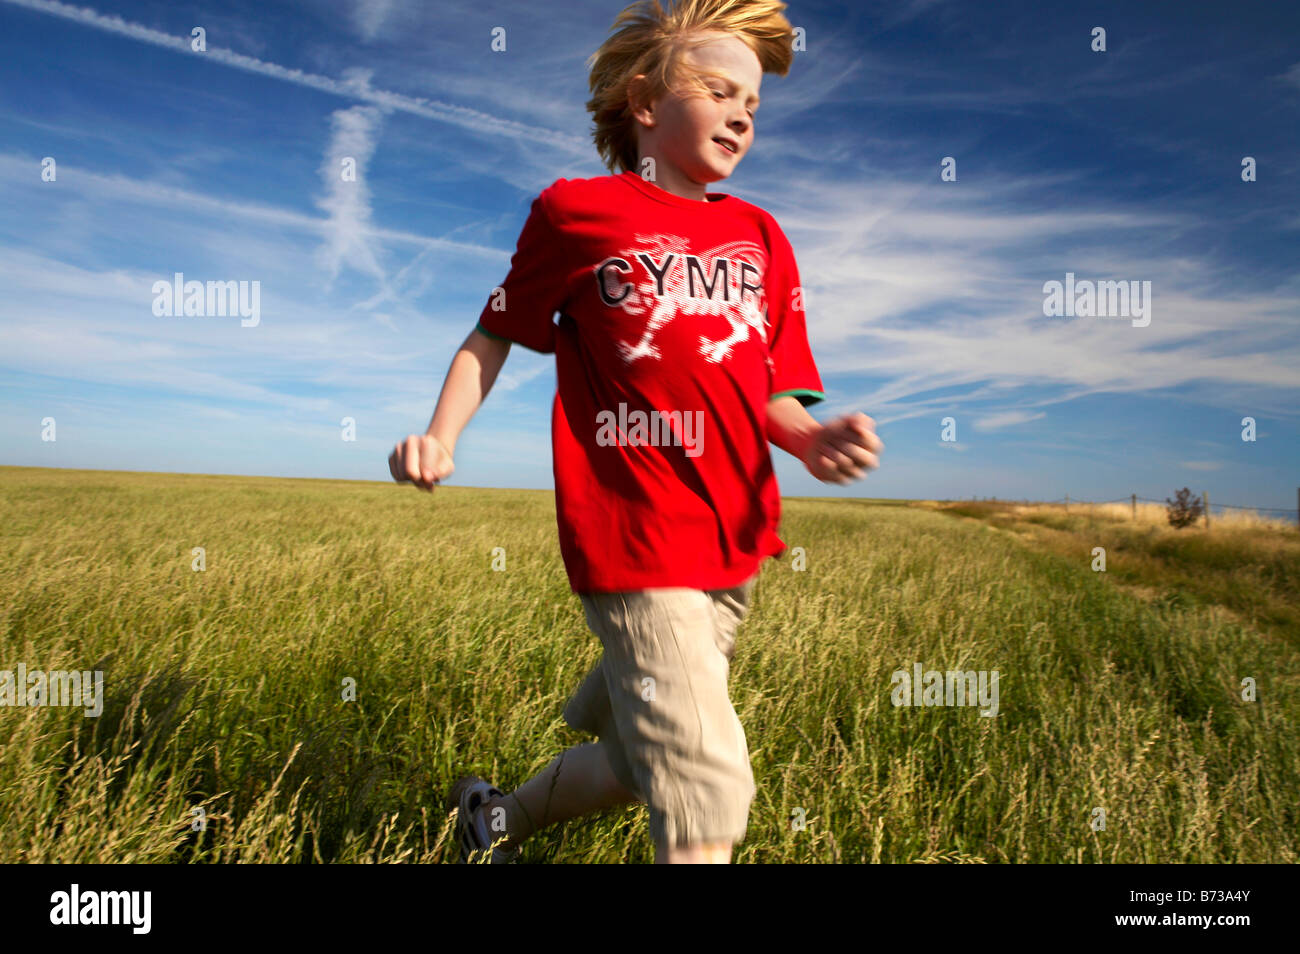 Jeune garçon courir à travers un champ d'herbe dans un T shirt Cymru chemin côtier du Glamorgan près de Nash Point Sud du Pays de Galles Banque D'Images